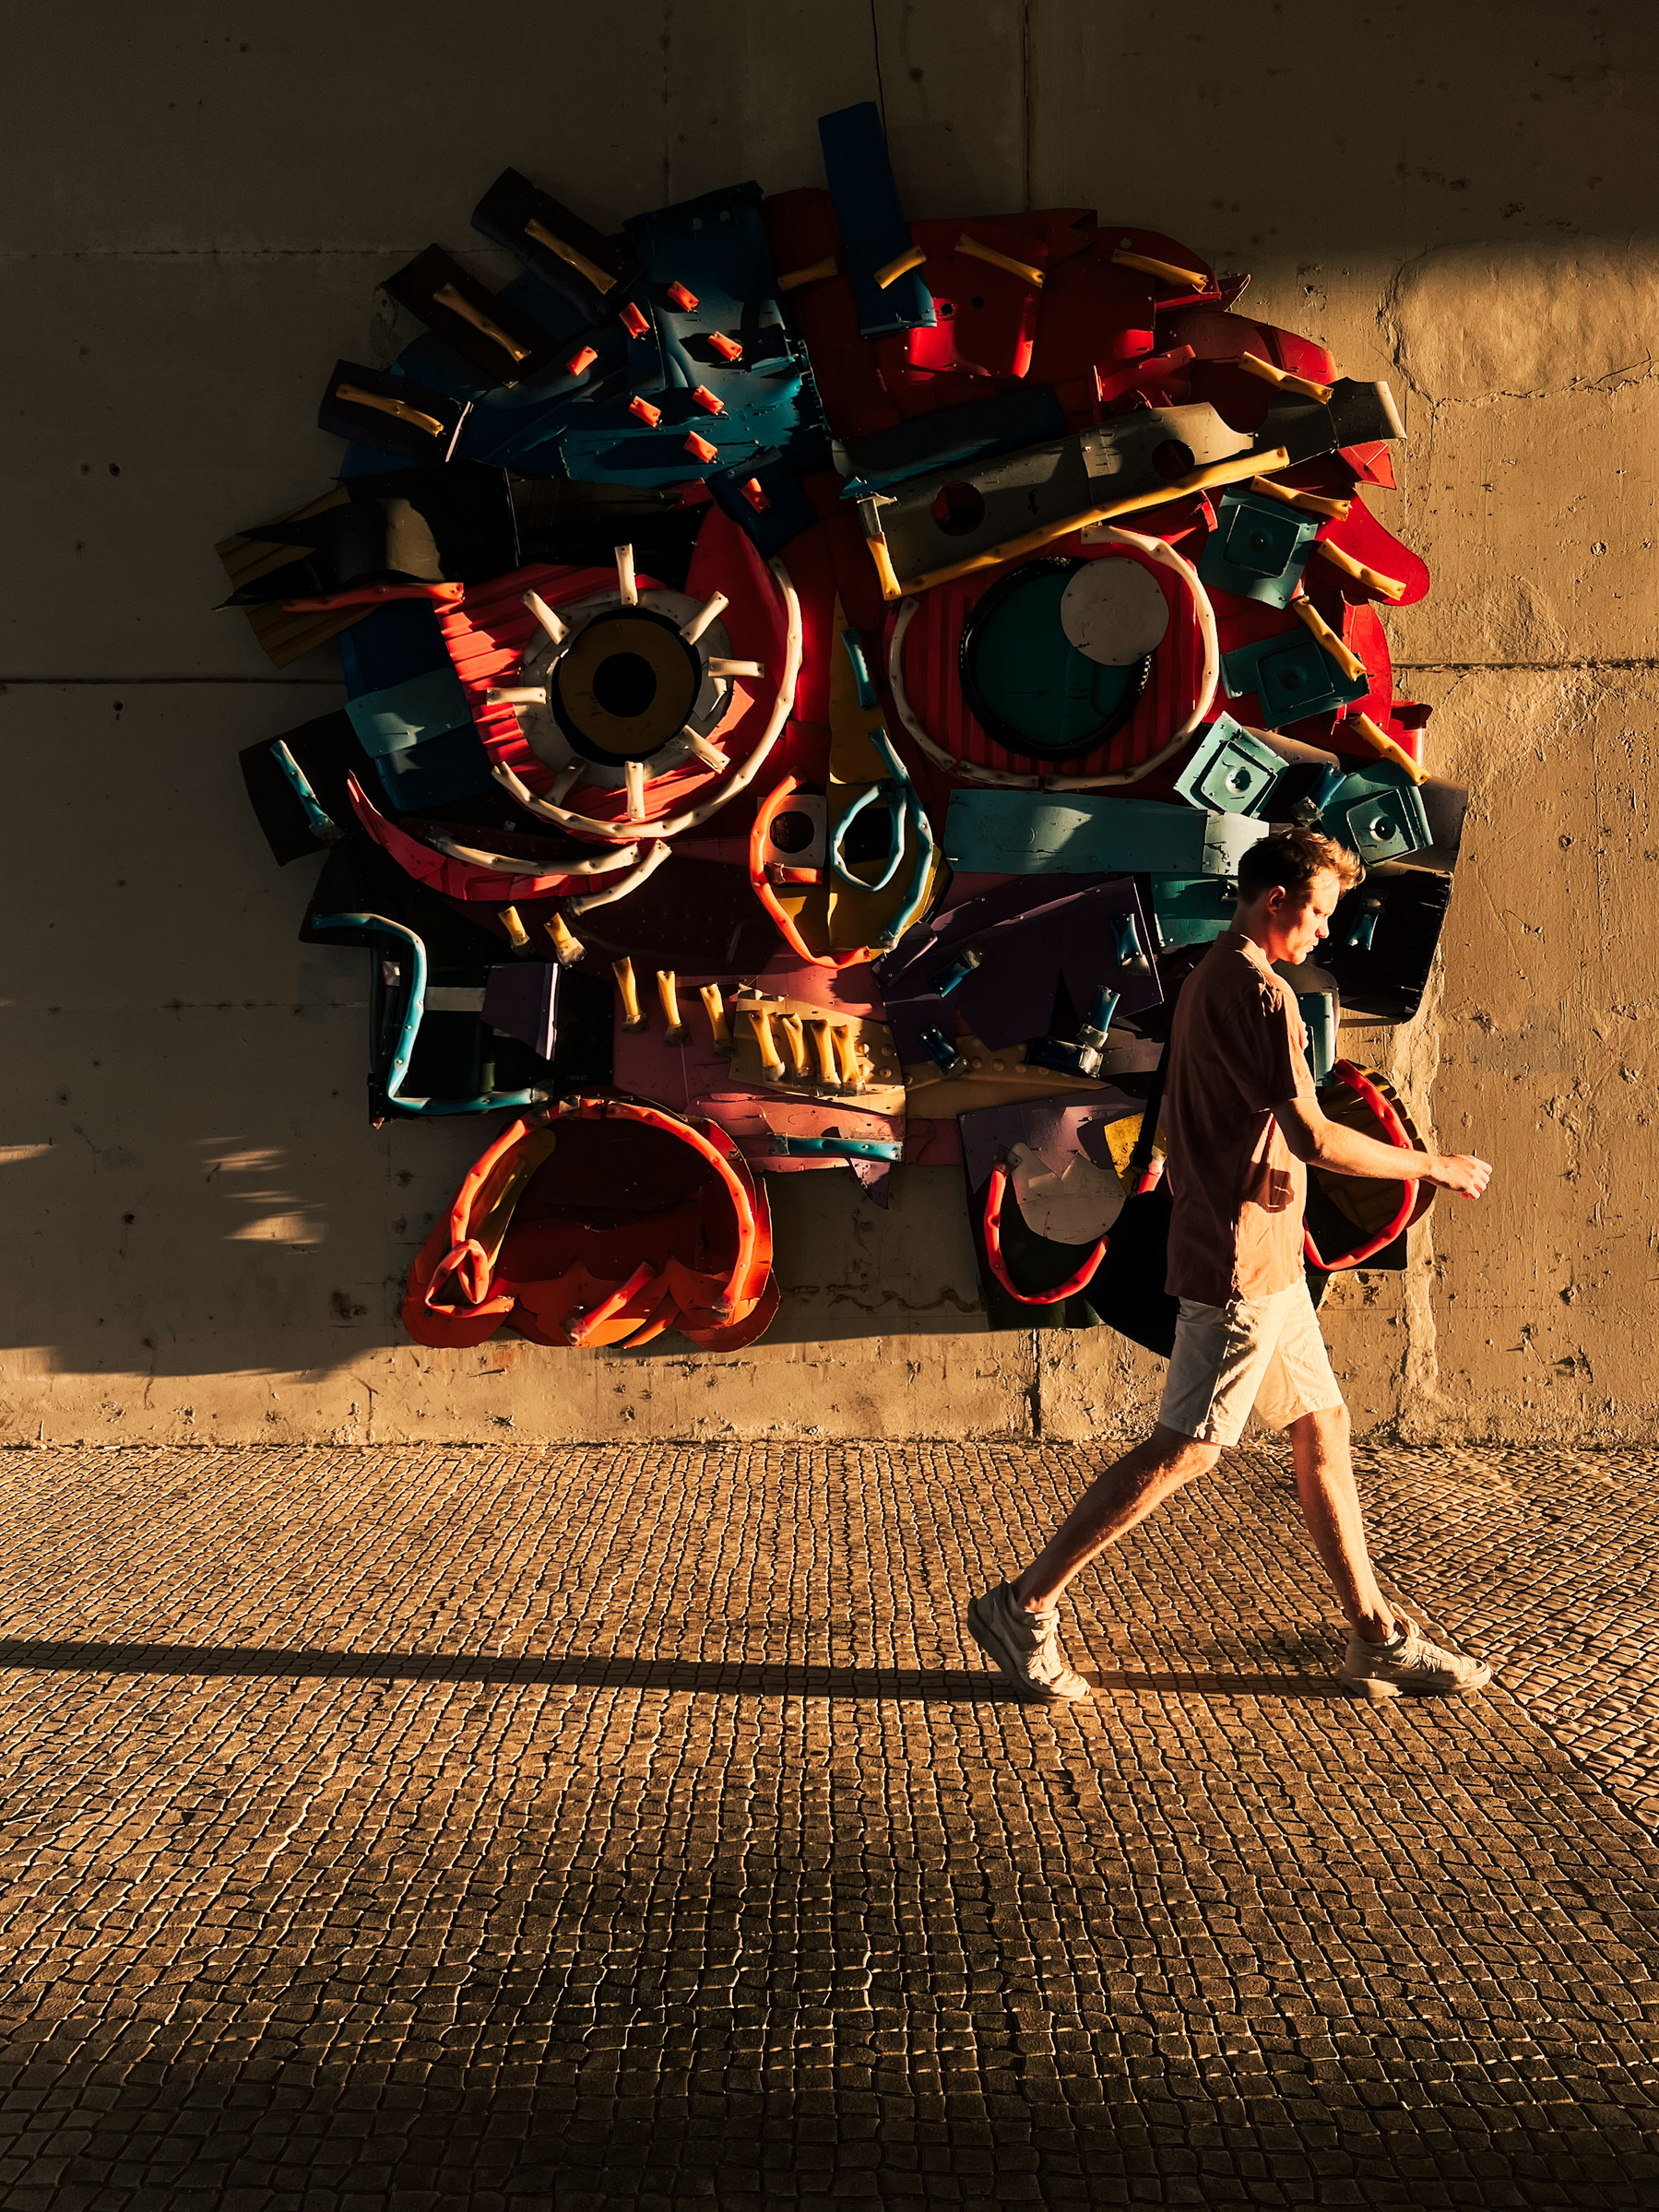 Street art. A man walks by a sculpture on a wall.